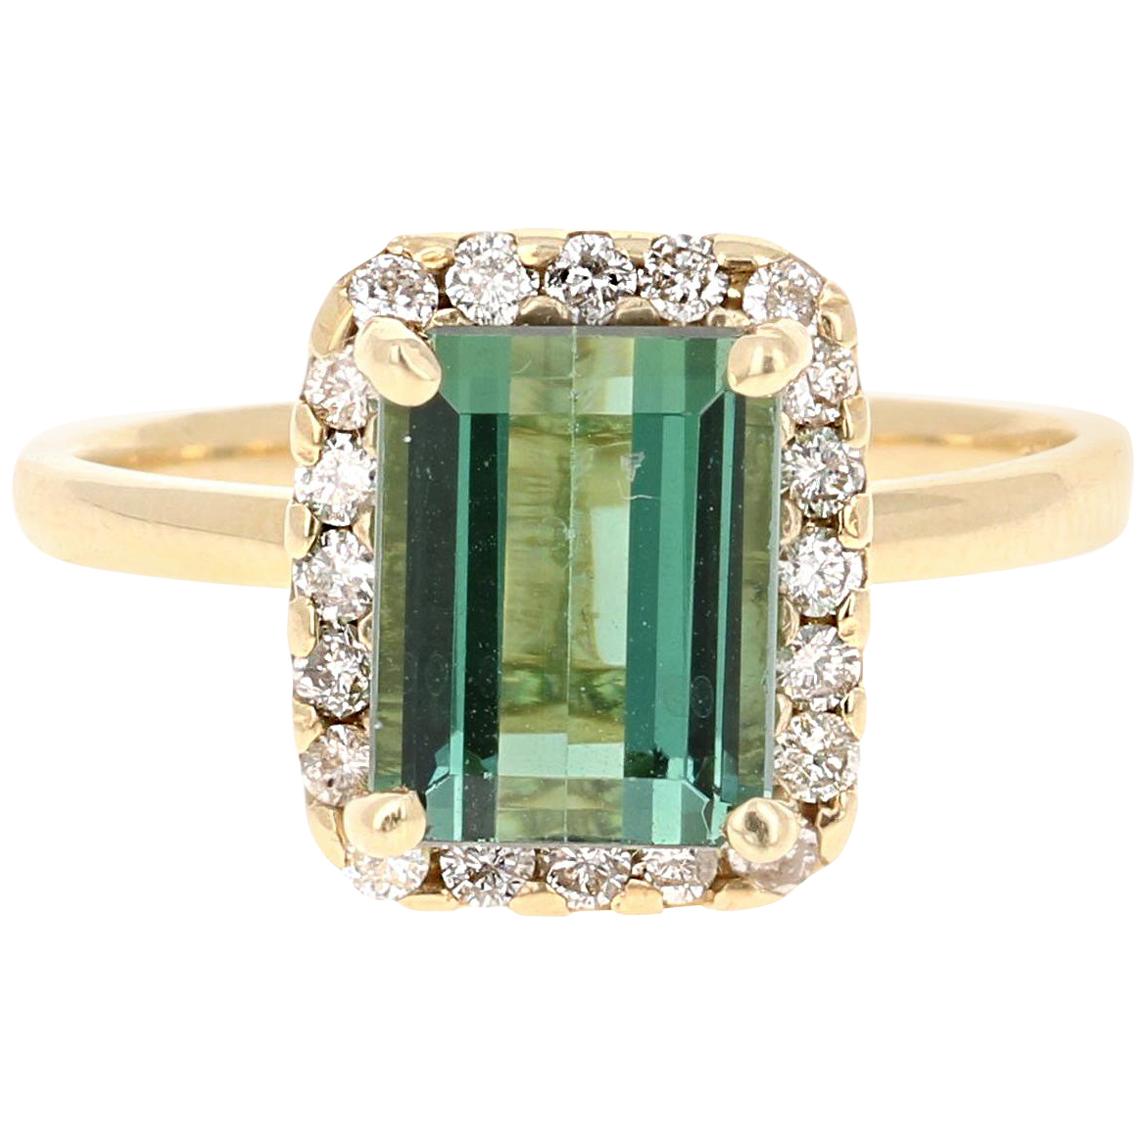 2.83 Carat Green Tourmaline Diamond 14 Karat Yellow Gold Engagement Ring